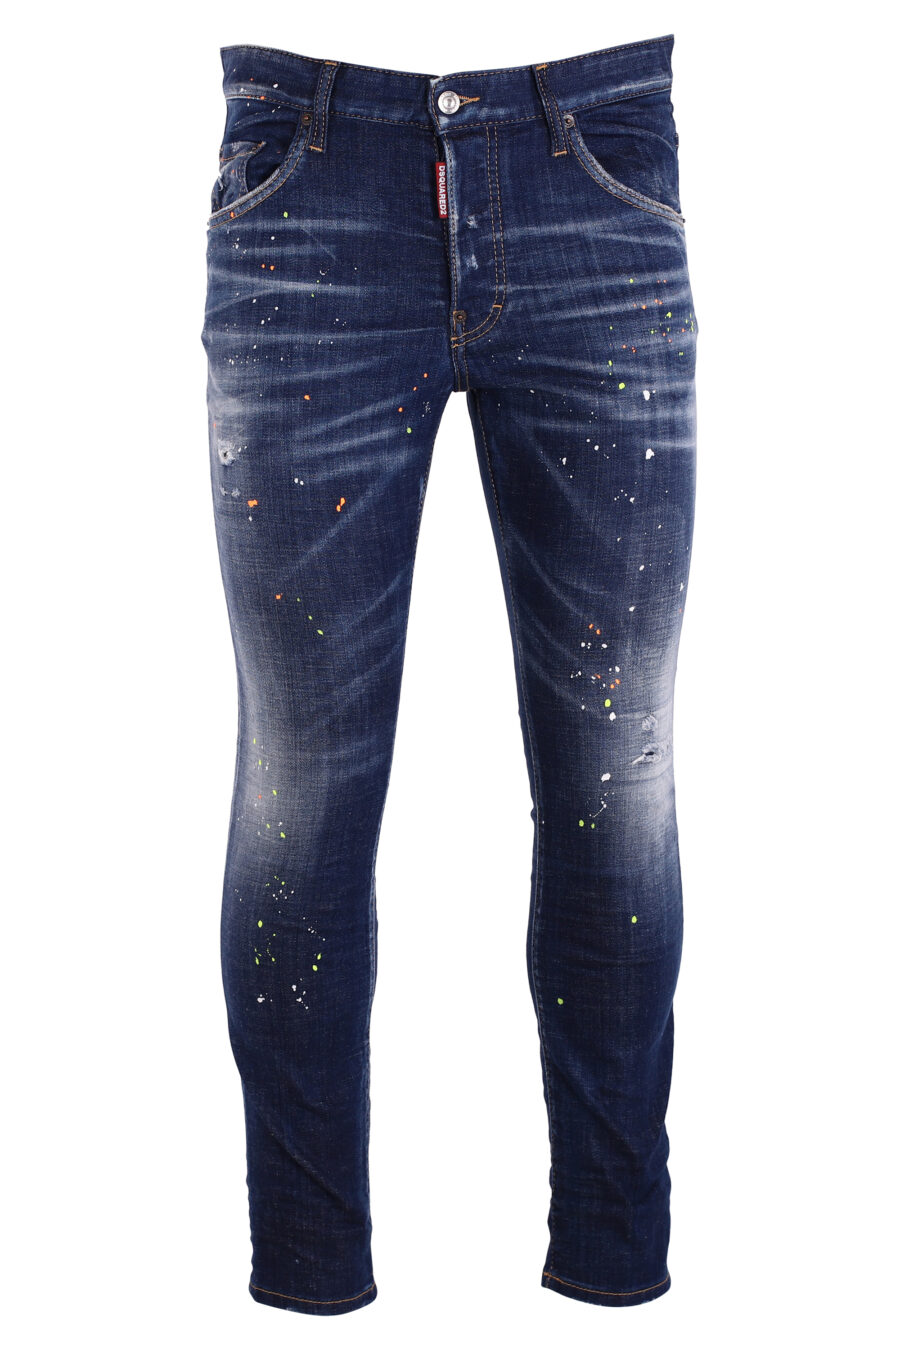 Jeans "skater jean" bleu avec des éclaboussures de peinture blanche - IMG 8993